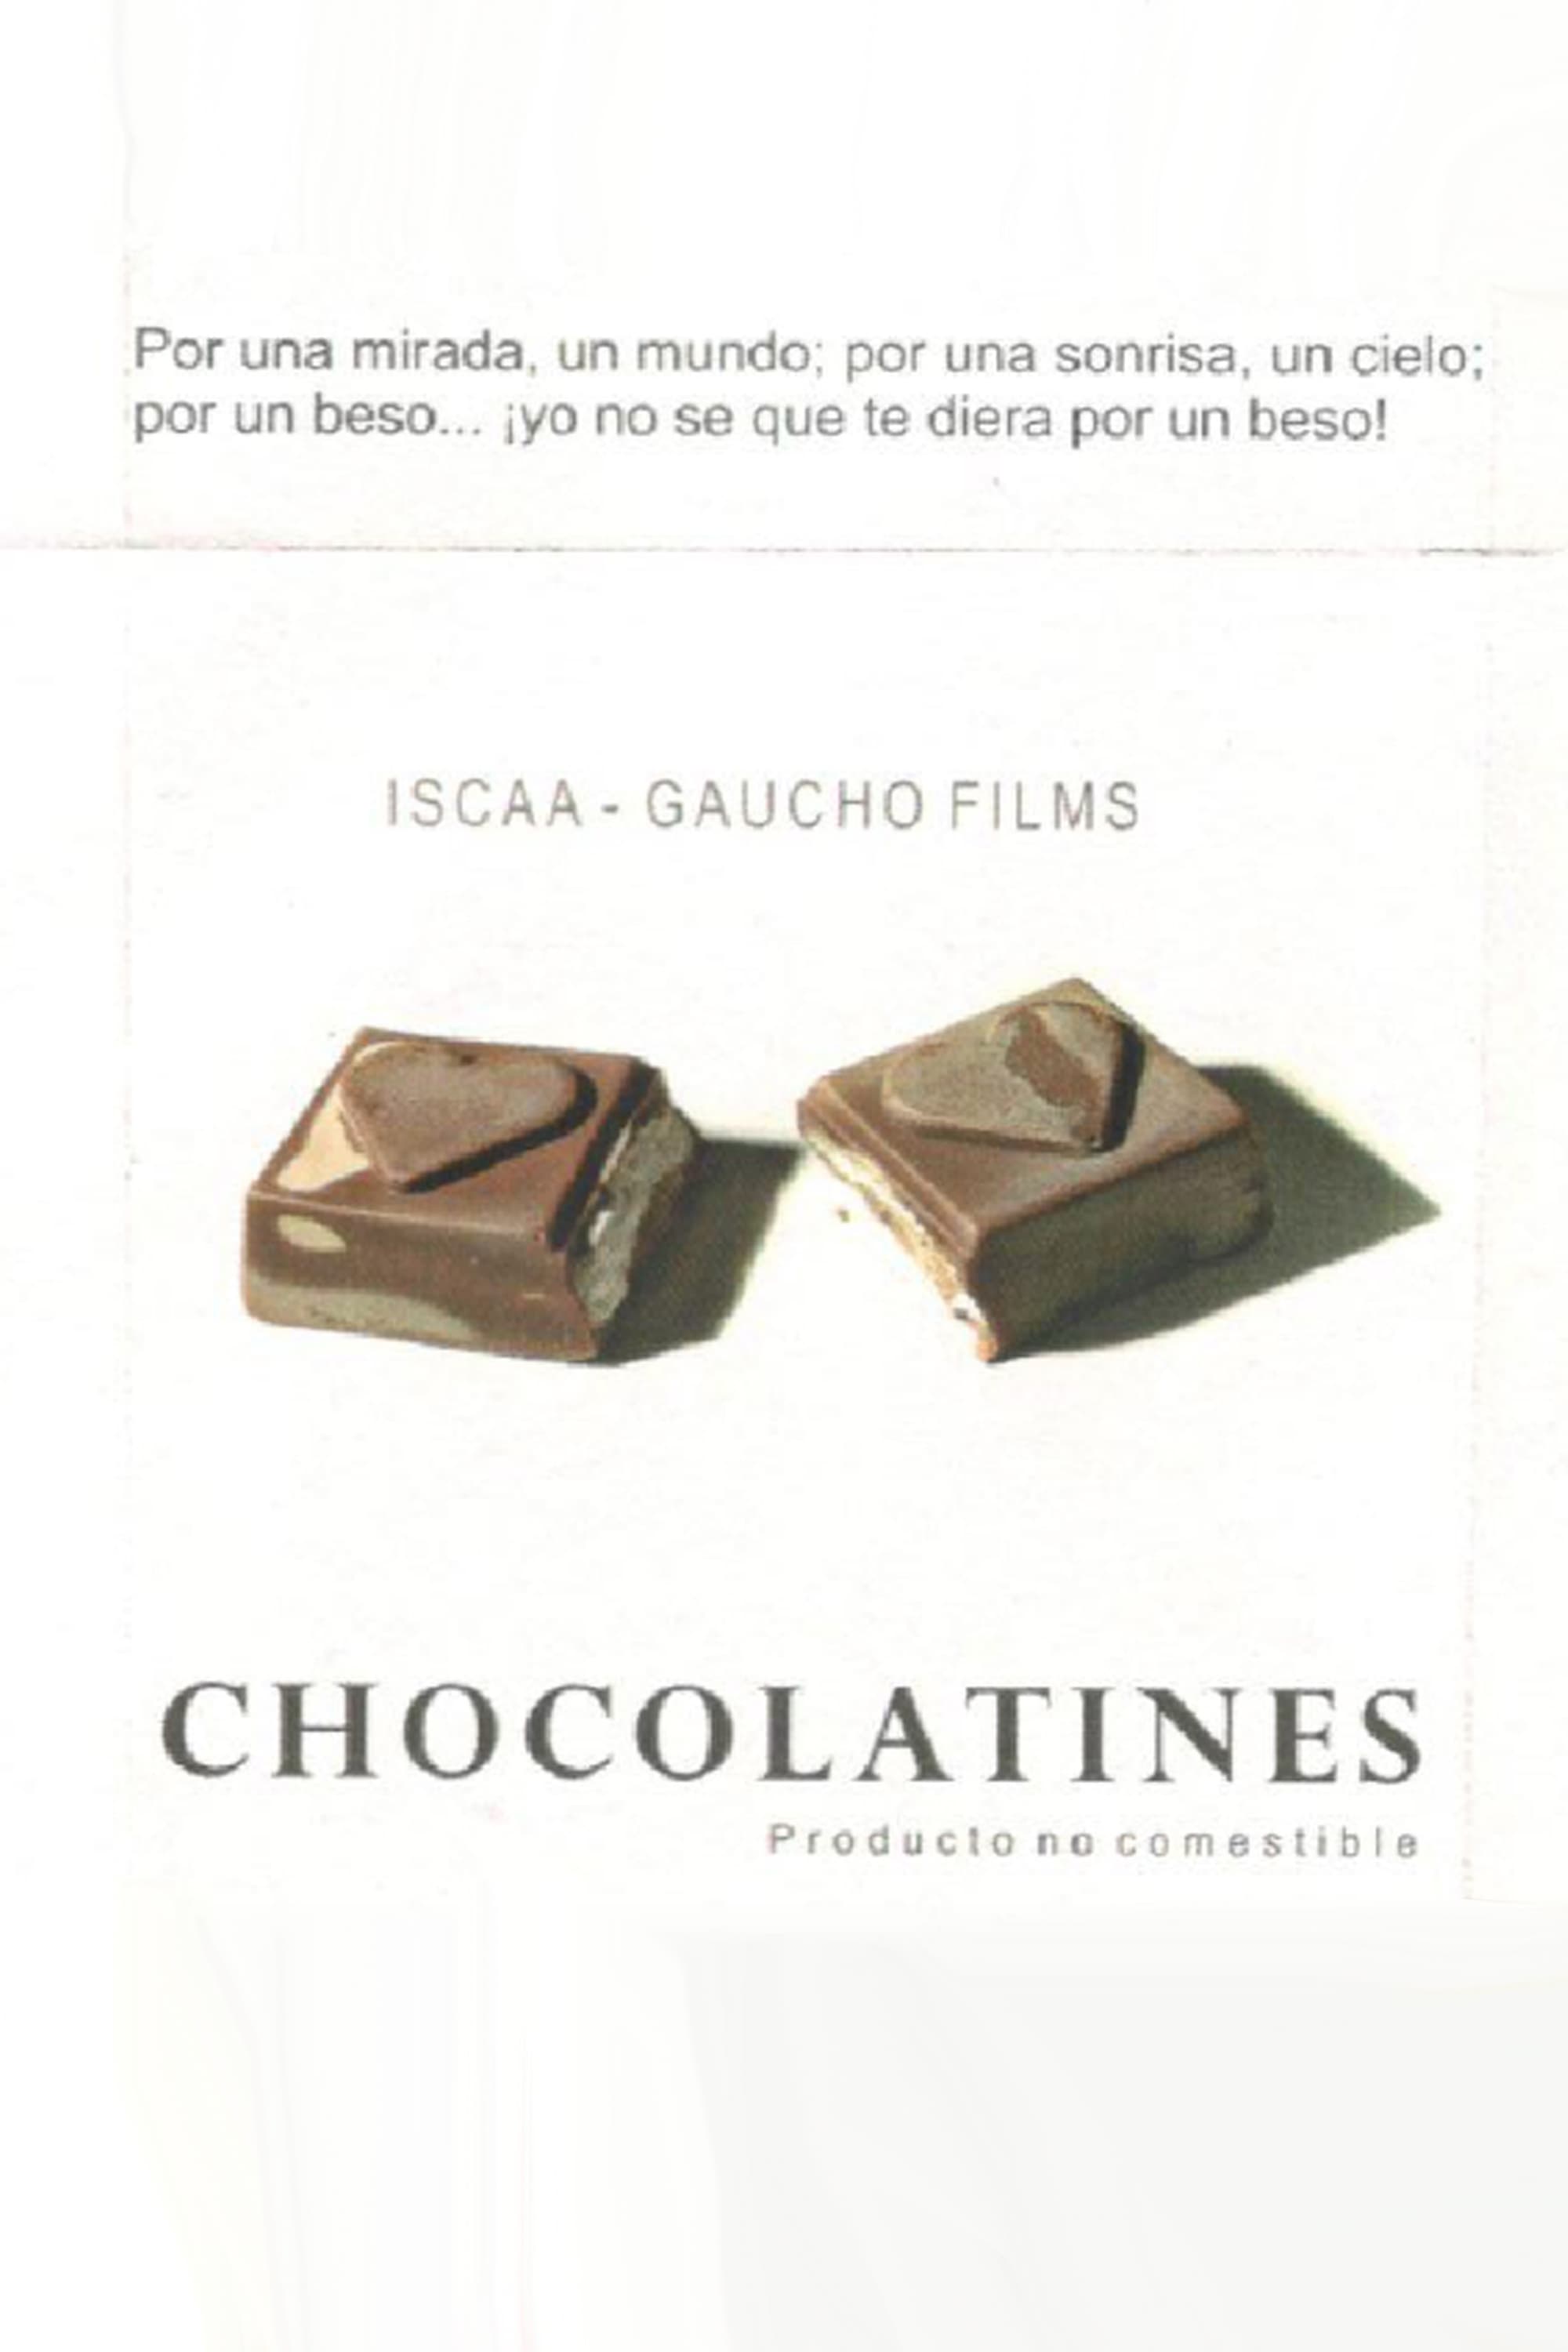 Chocolatines: producto no comestible